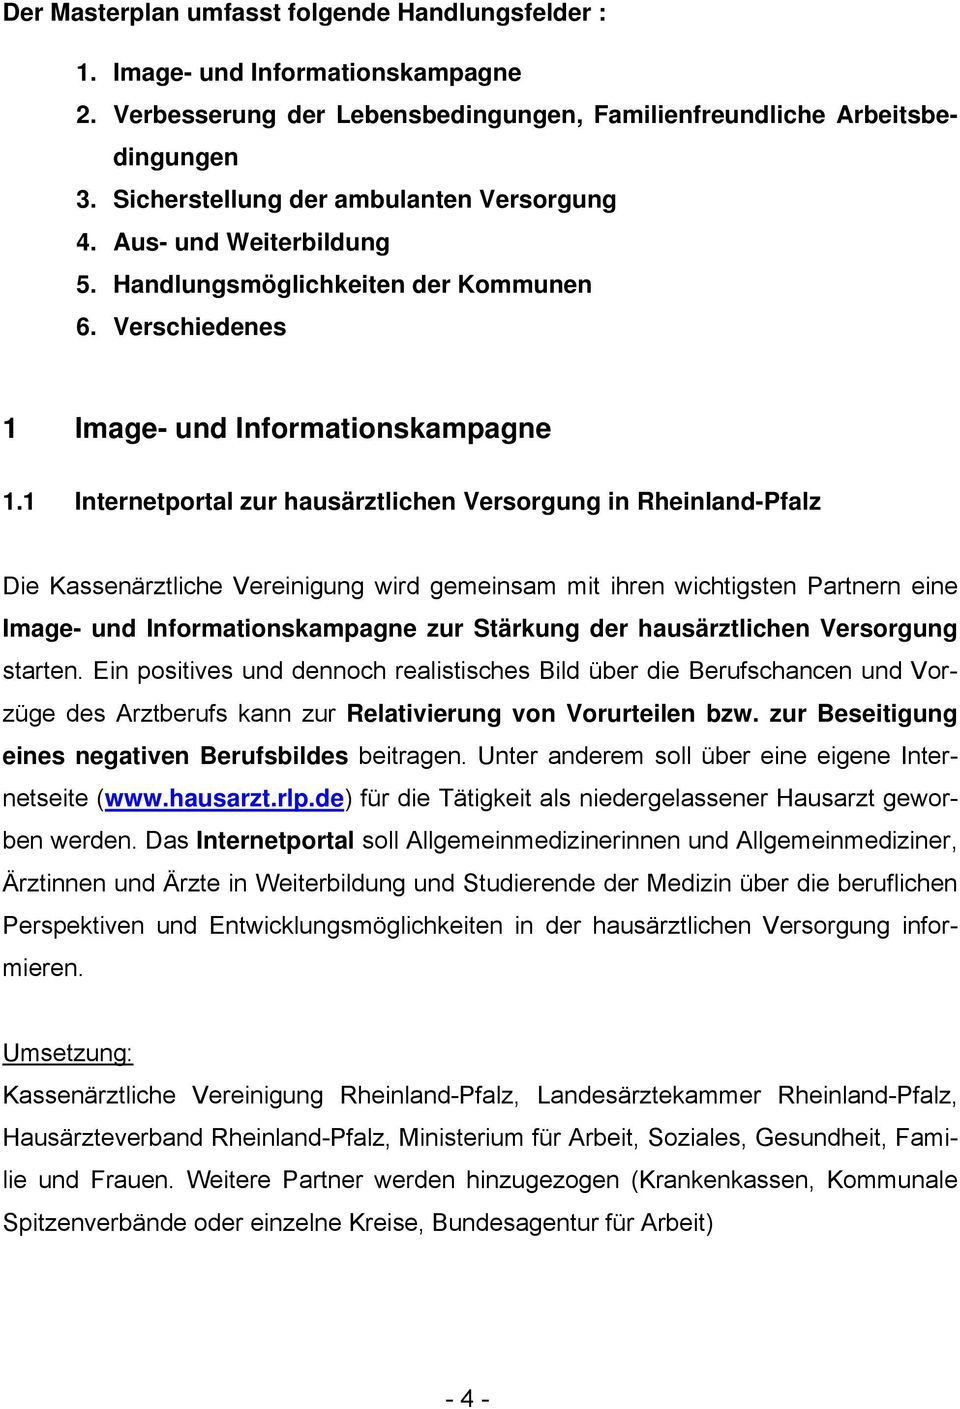 1 Internetportal zur hausärztlichen Versorgung in Rheinland-Pfalz Die Kassenärztliche Vereinigung wird gemeinsam mit ihren wichtigsten Partnern eine Image- und Informationskampagne zur Stärkung der